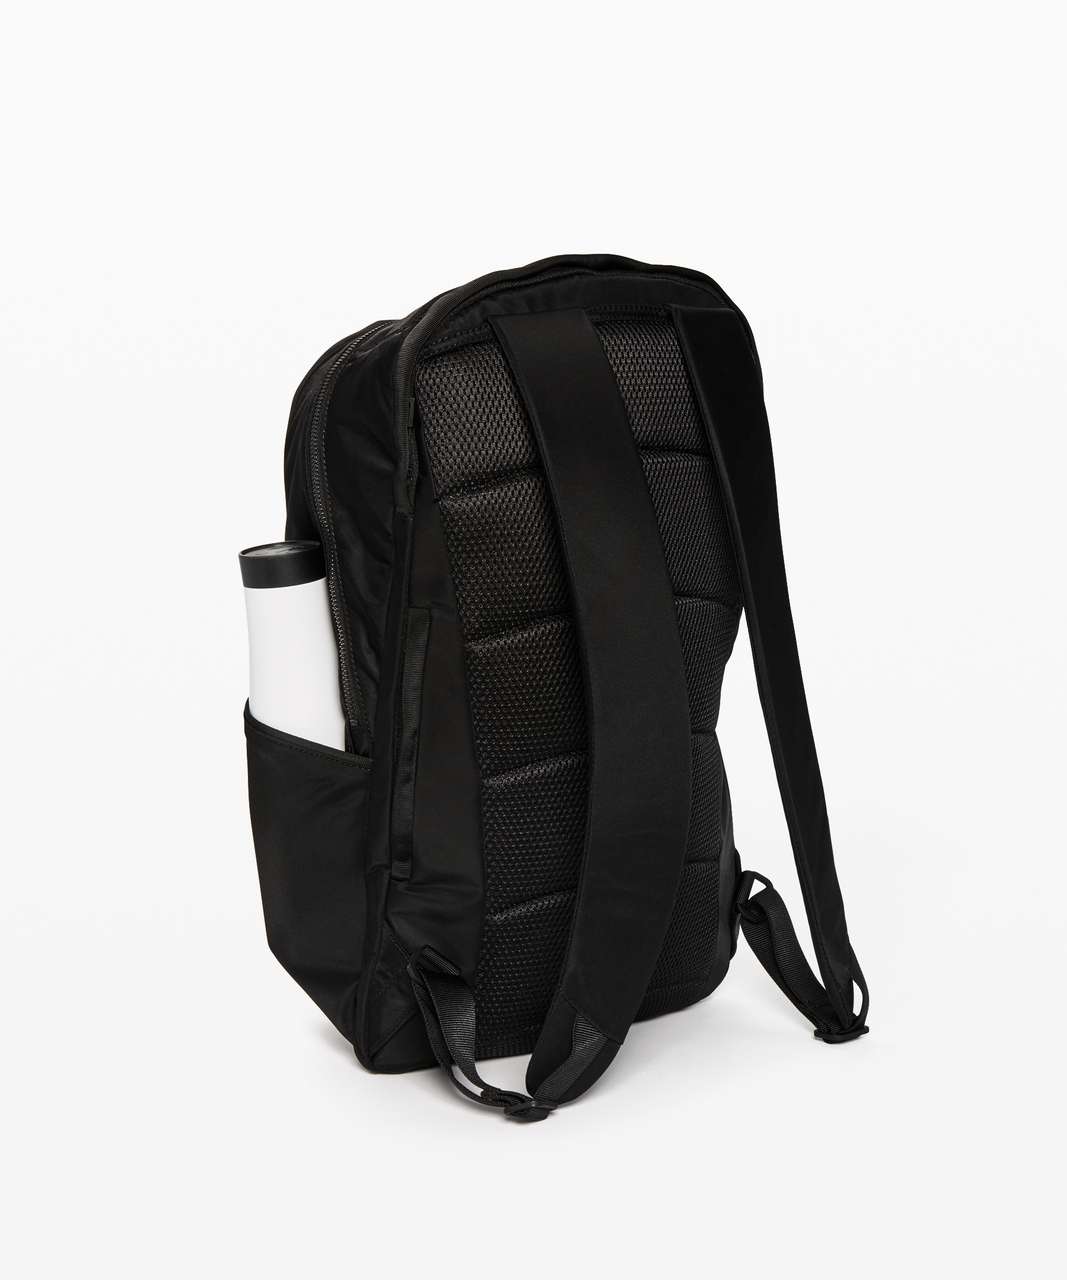 Lululemon Out Of Range Backpack *20L - Black